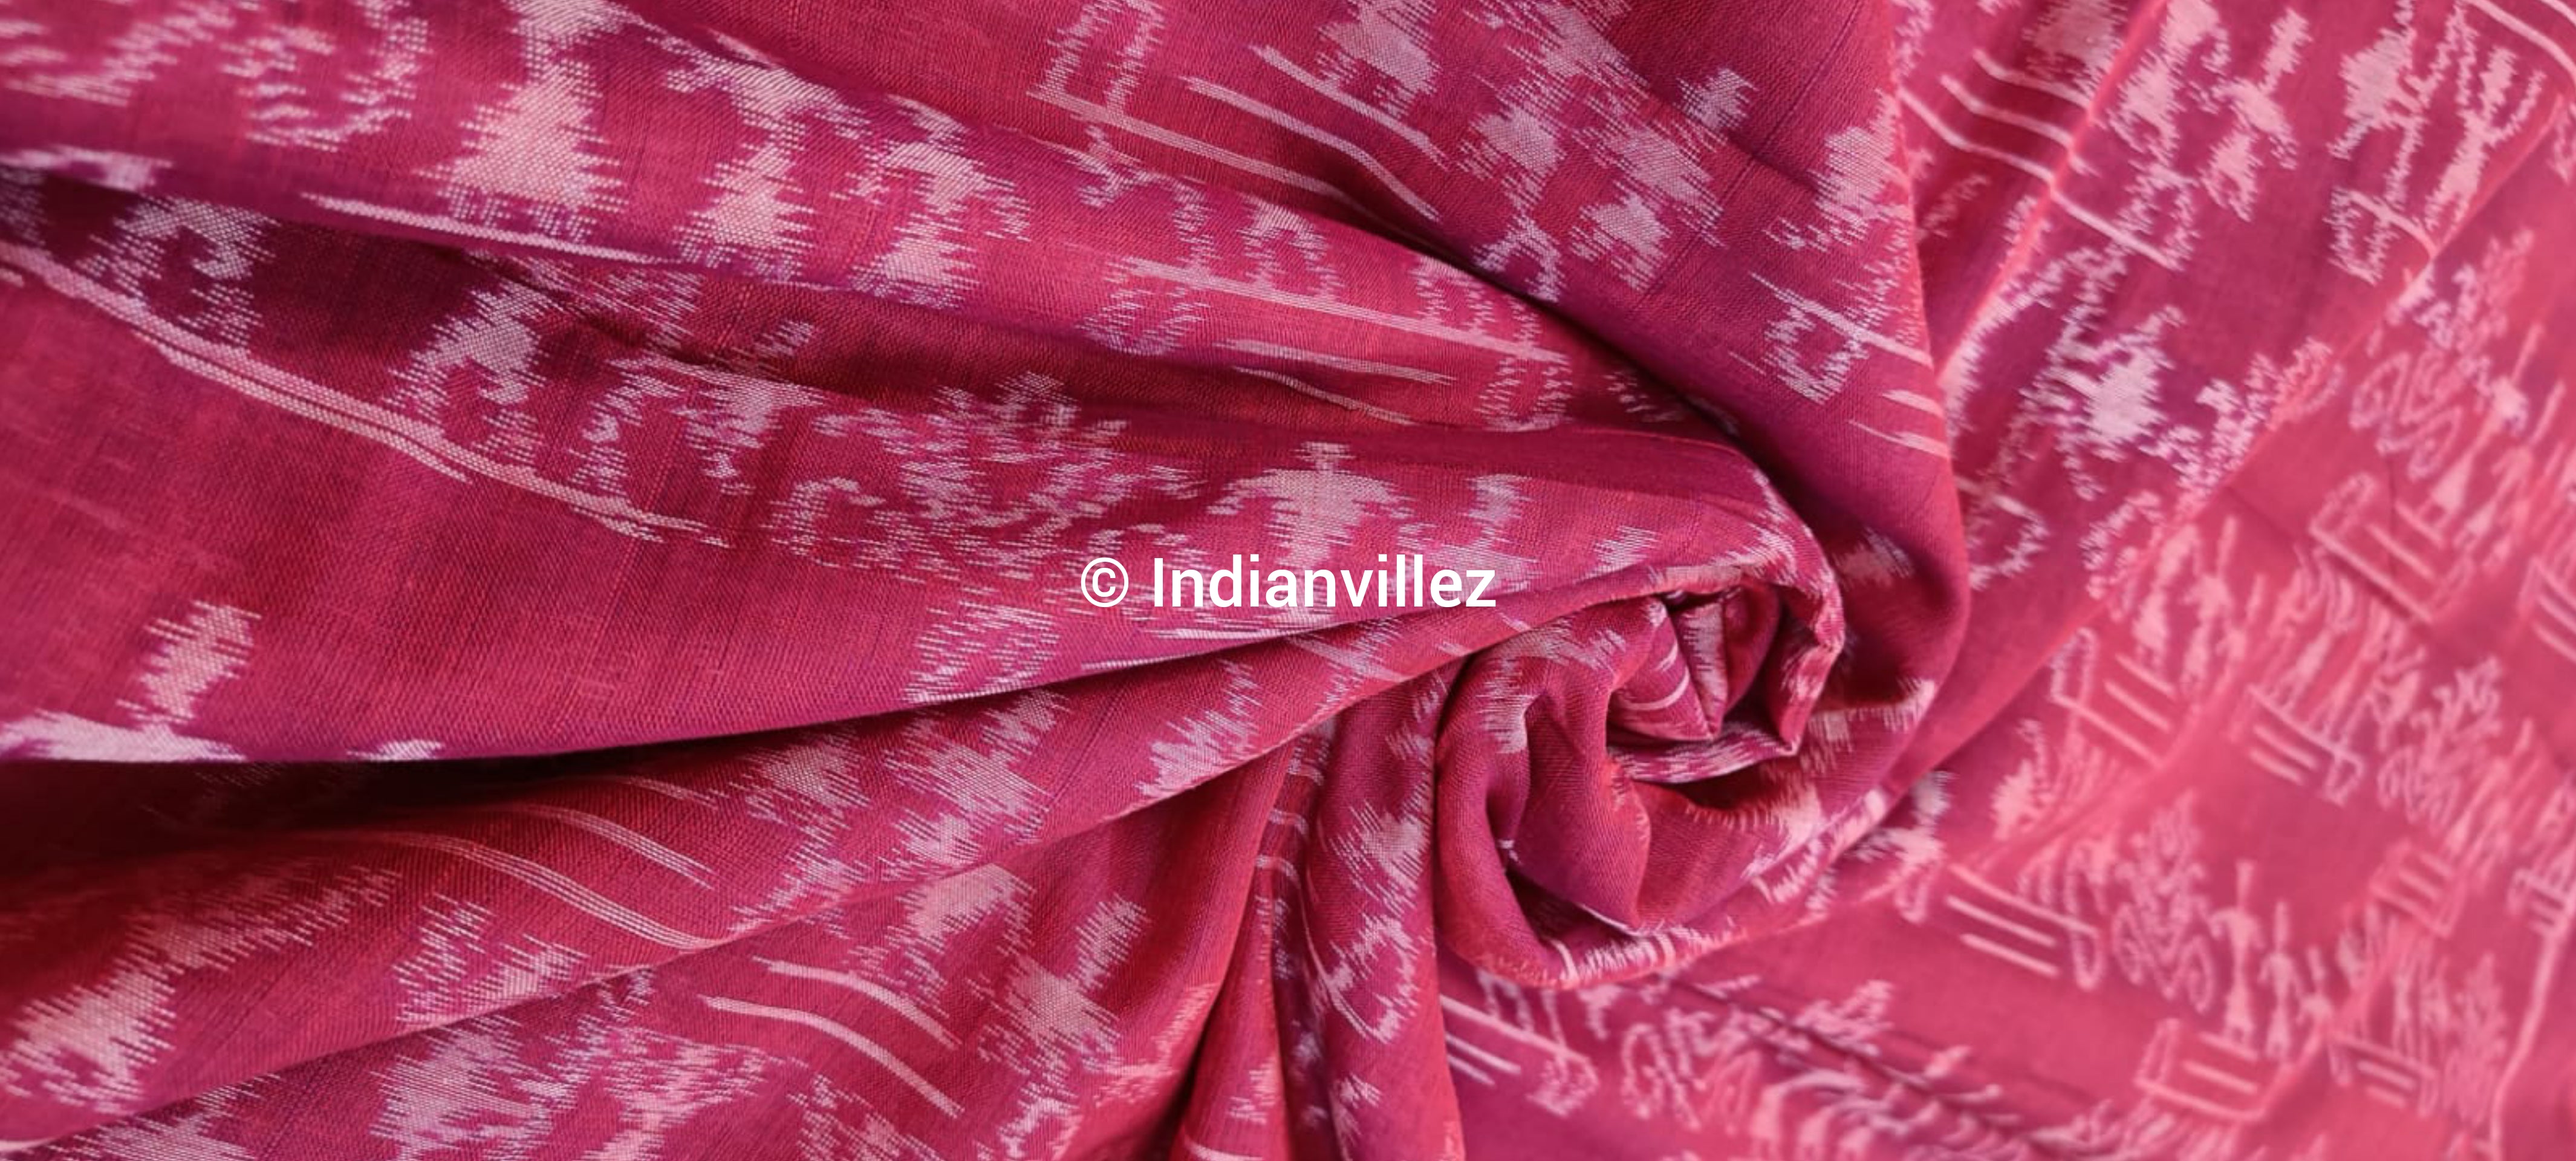 Red Tribal Sambalpuri Ikat Fabric